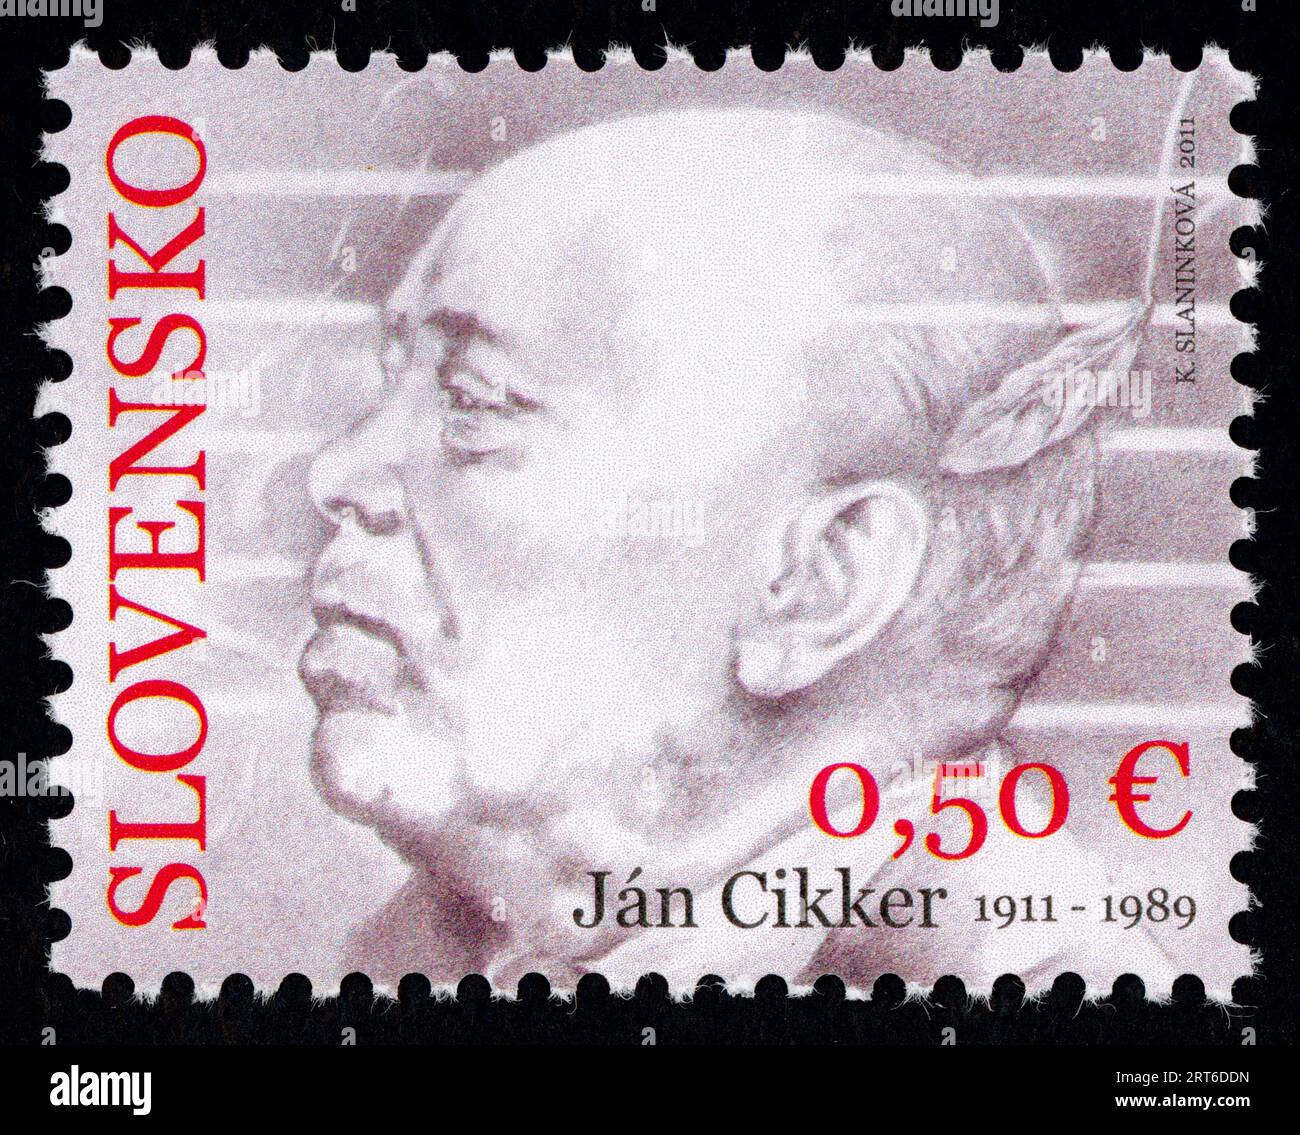 Ján Cikker (1911 – 1989). Francobollo emesso in Slovacchia nel 2011. Ján Cikker è stato un compositore slovacco, uno dei principali esponenti della musica classica slovacca moderna. Ha ricevuto il titolo di artista nazionale in Slovacchia, il Premio Herder (1966) e il Premio Internazionale di musica IMC-UNESCO (1979). Foto Stock